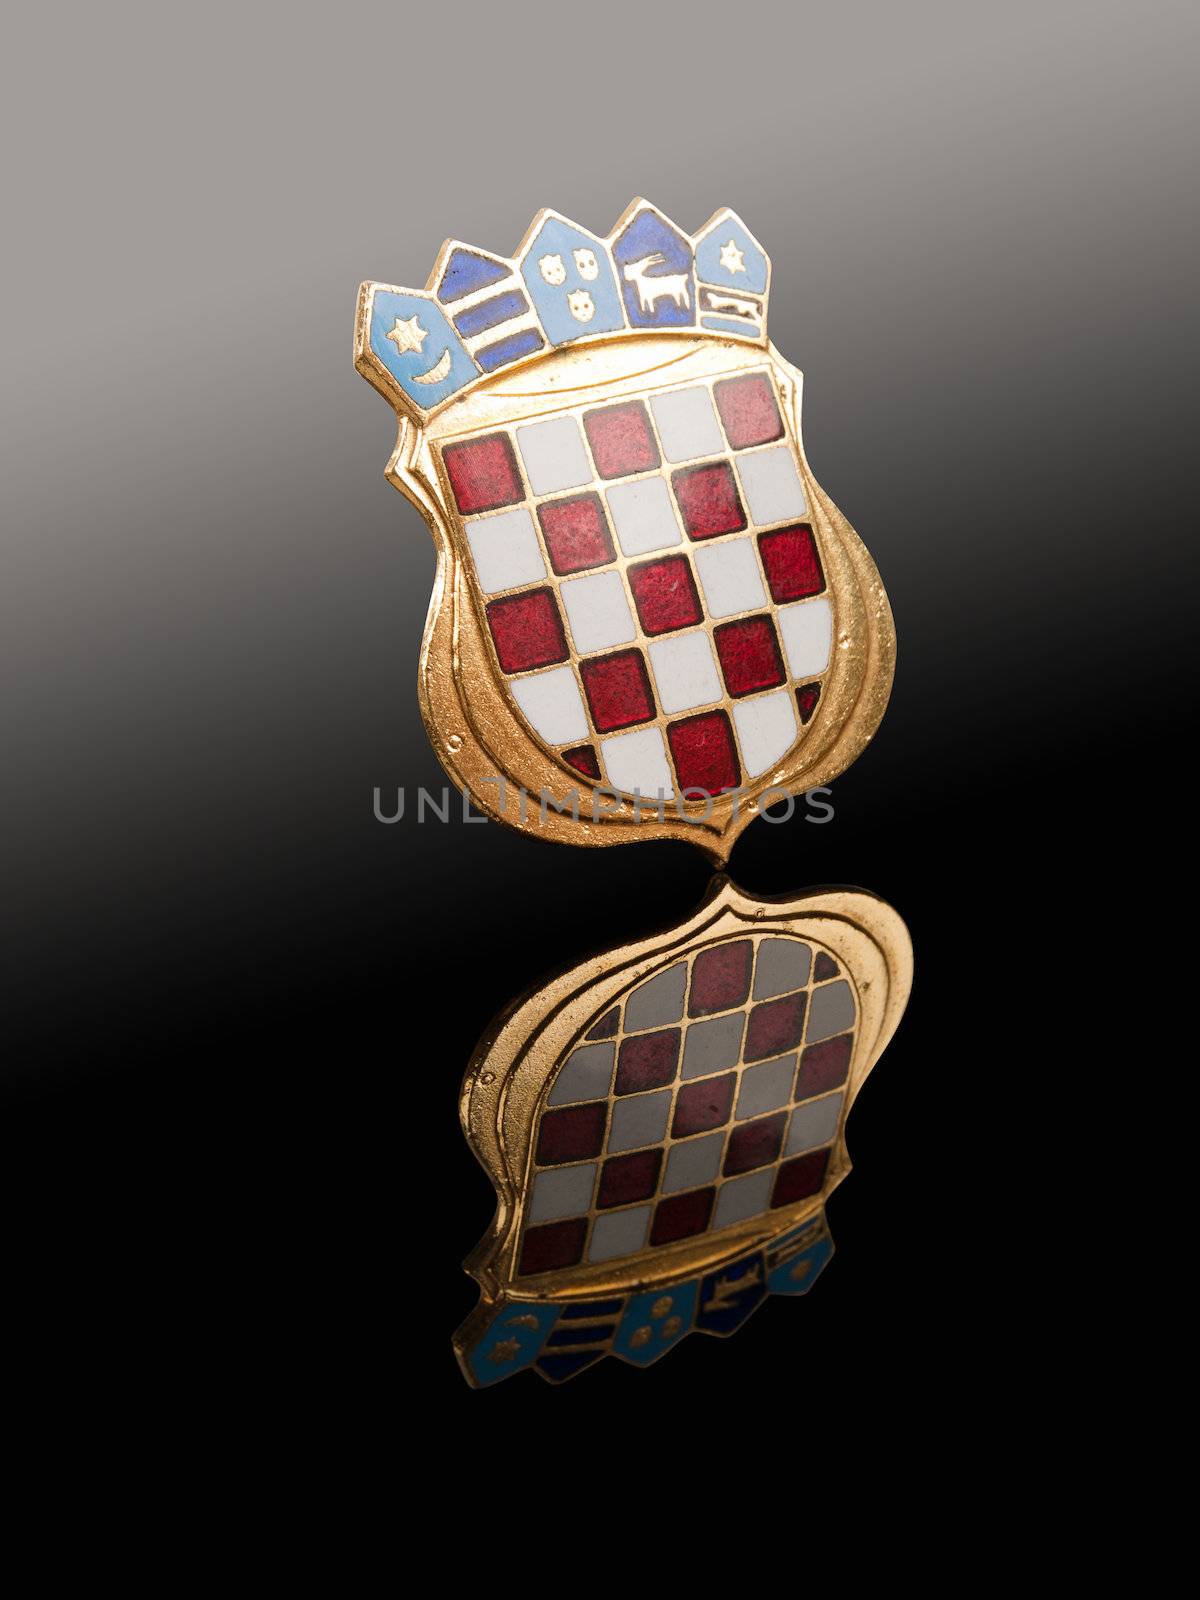 Emblem of Croatia by sewer12